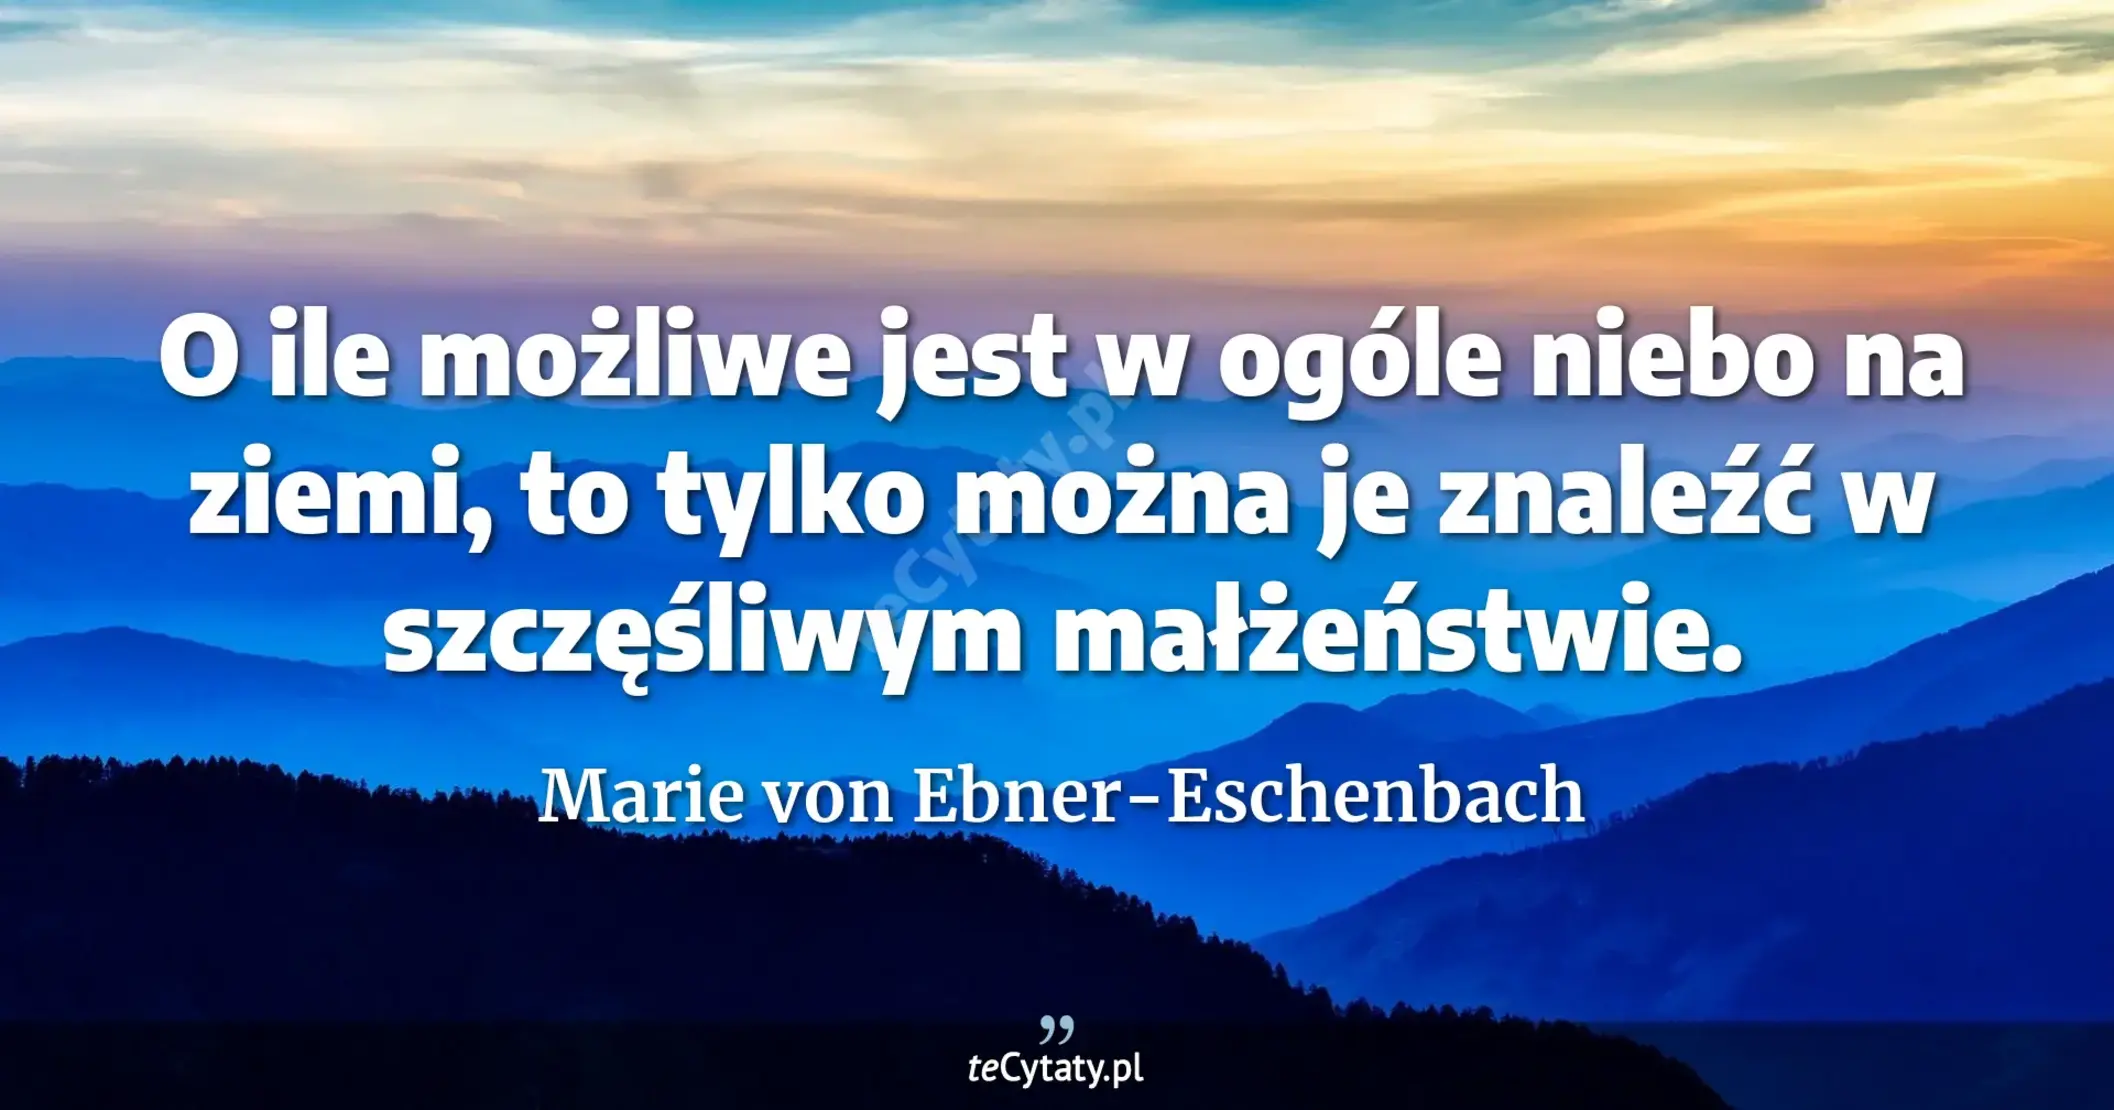 O ile możliwe jest w ogóle niebo na ziemi, to tylko można je znaleźć w szczęśliwym małżeństwie. - Marie von Ebner-Eschenbach